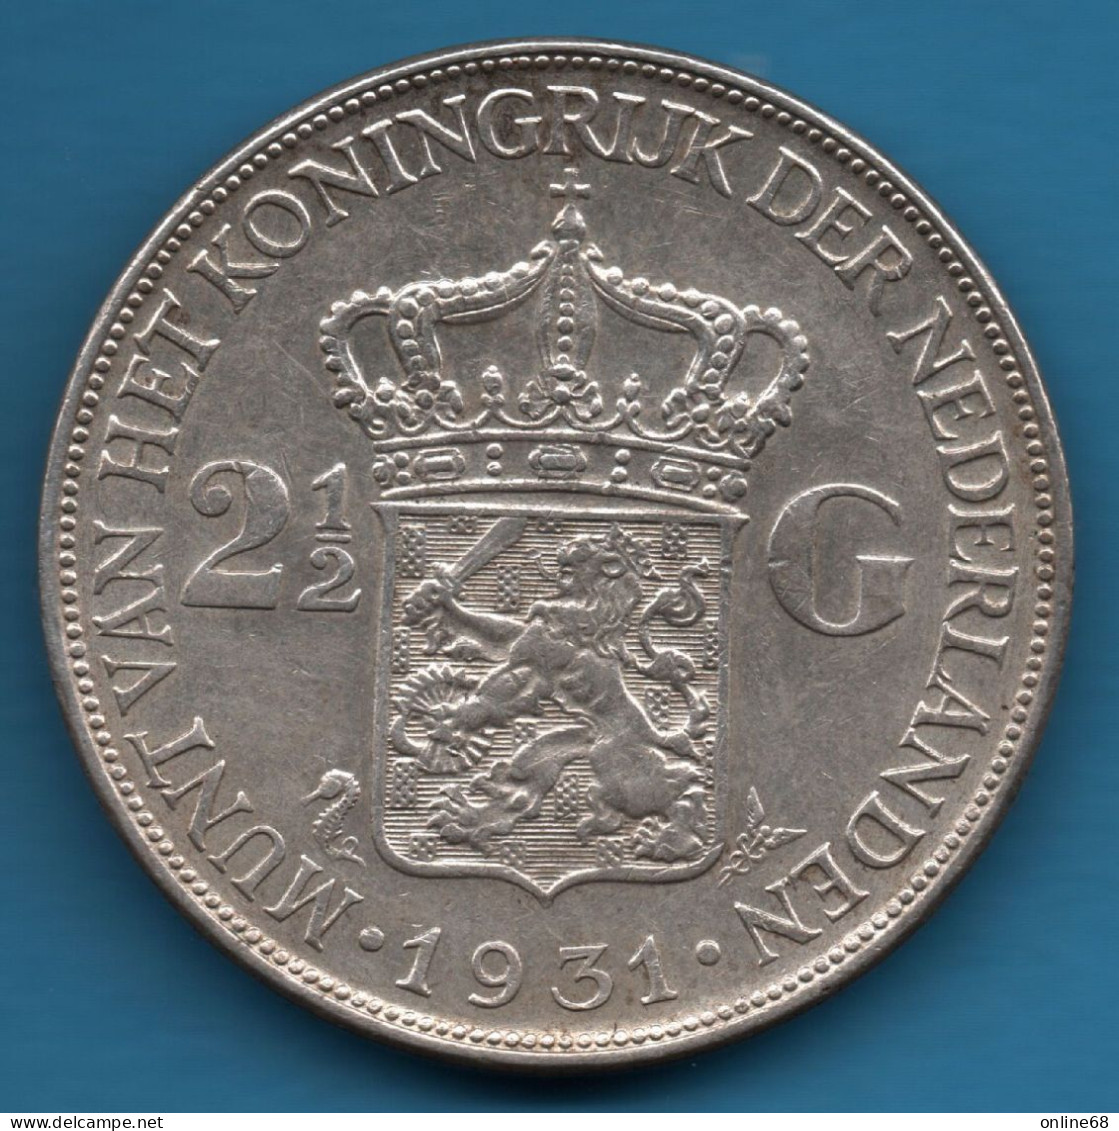 NEDERLAND Netherlands 2 ½ GULDEN 1931 KM# 165 Argent 720‰ Silver WILHELMINA KONINGIN DER NEDERLANDEN - 2 1/2 Florín Holandés (Gulden)